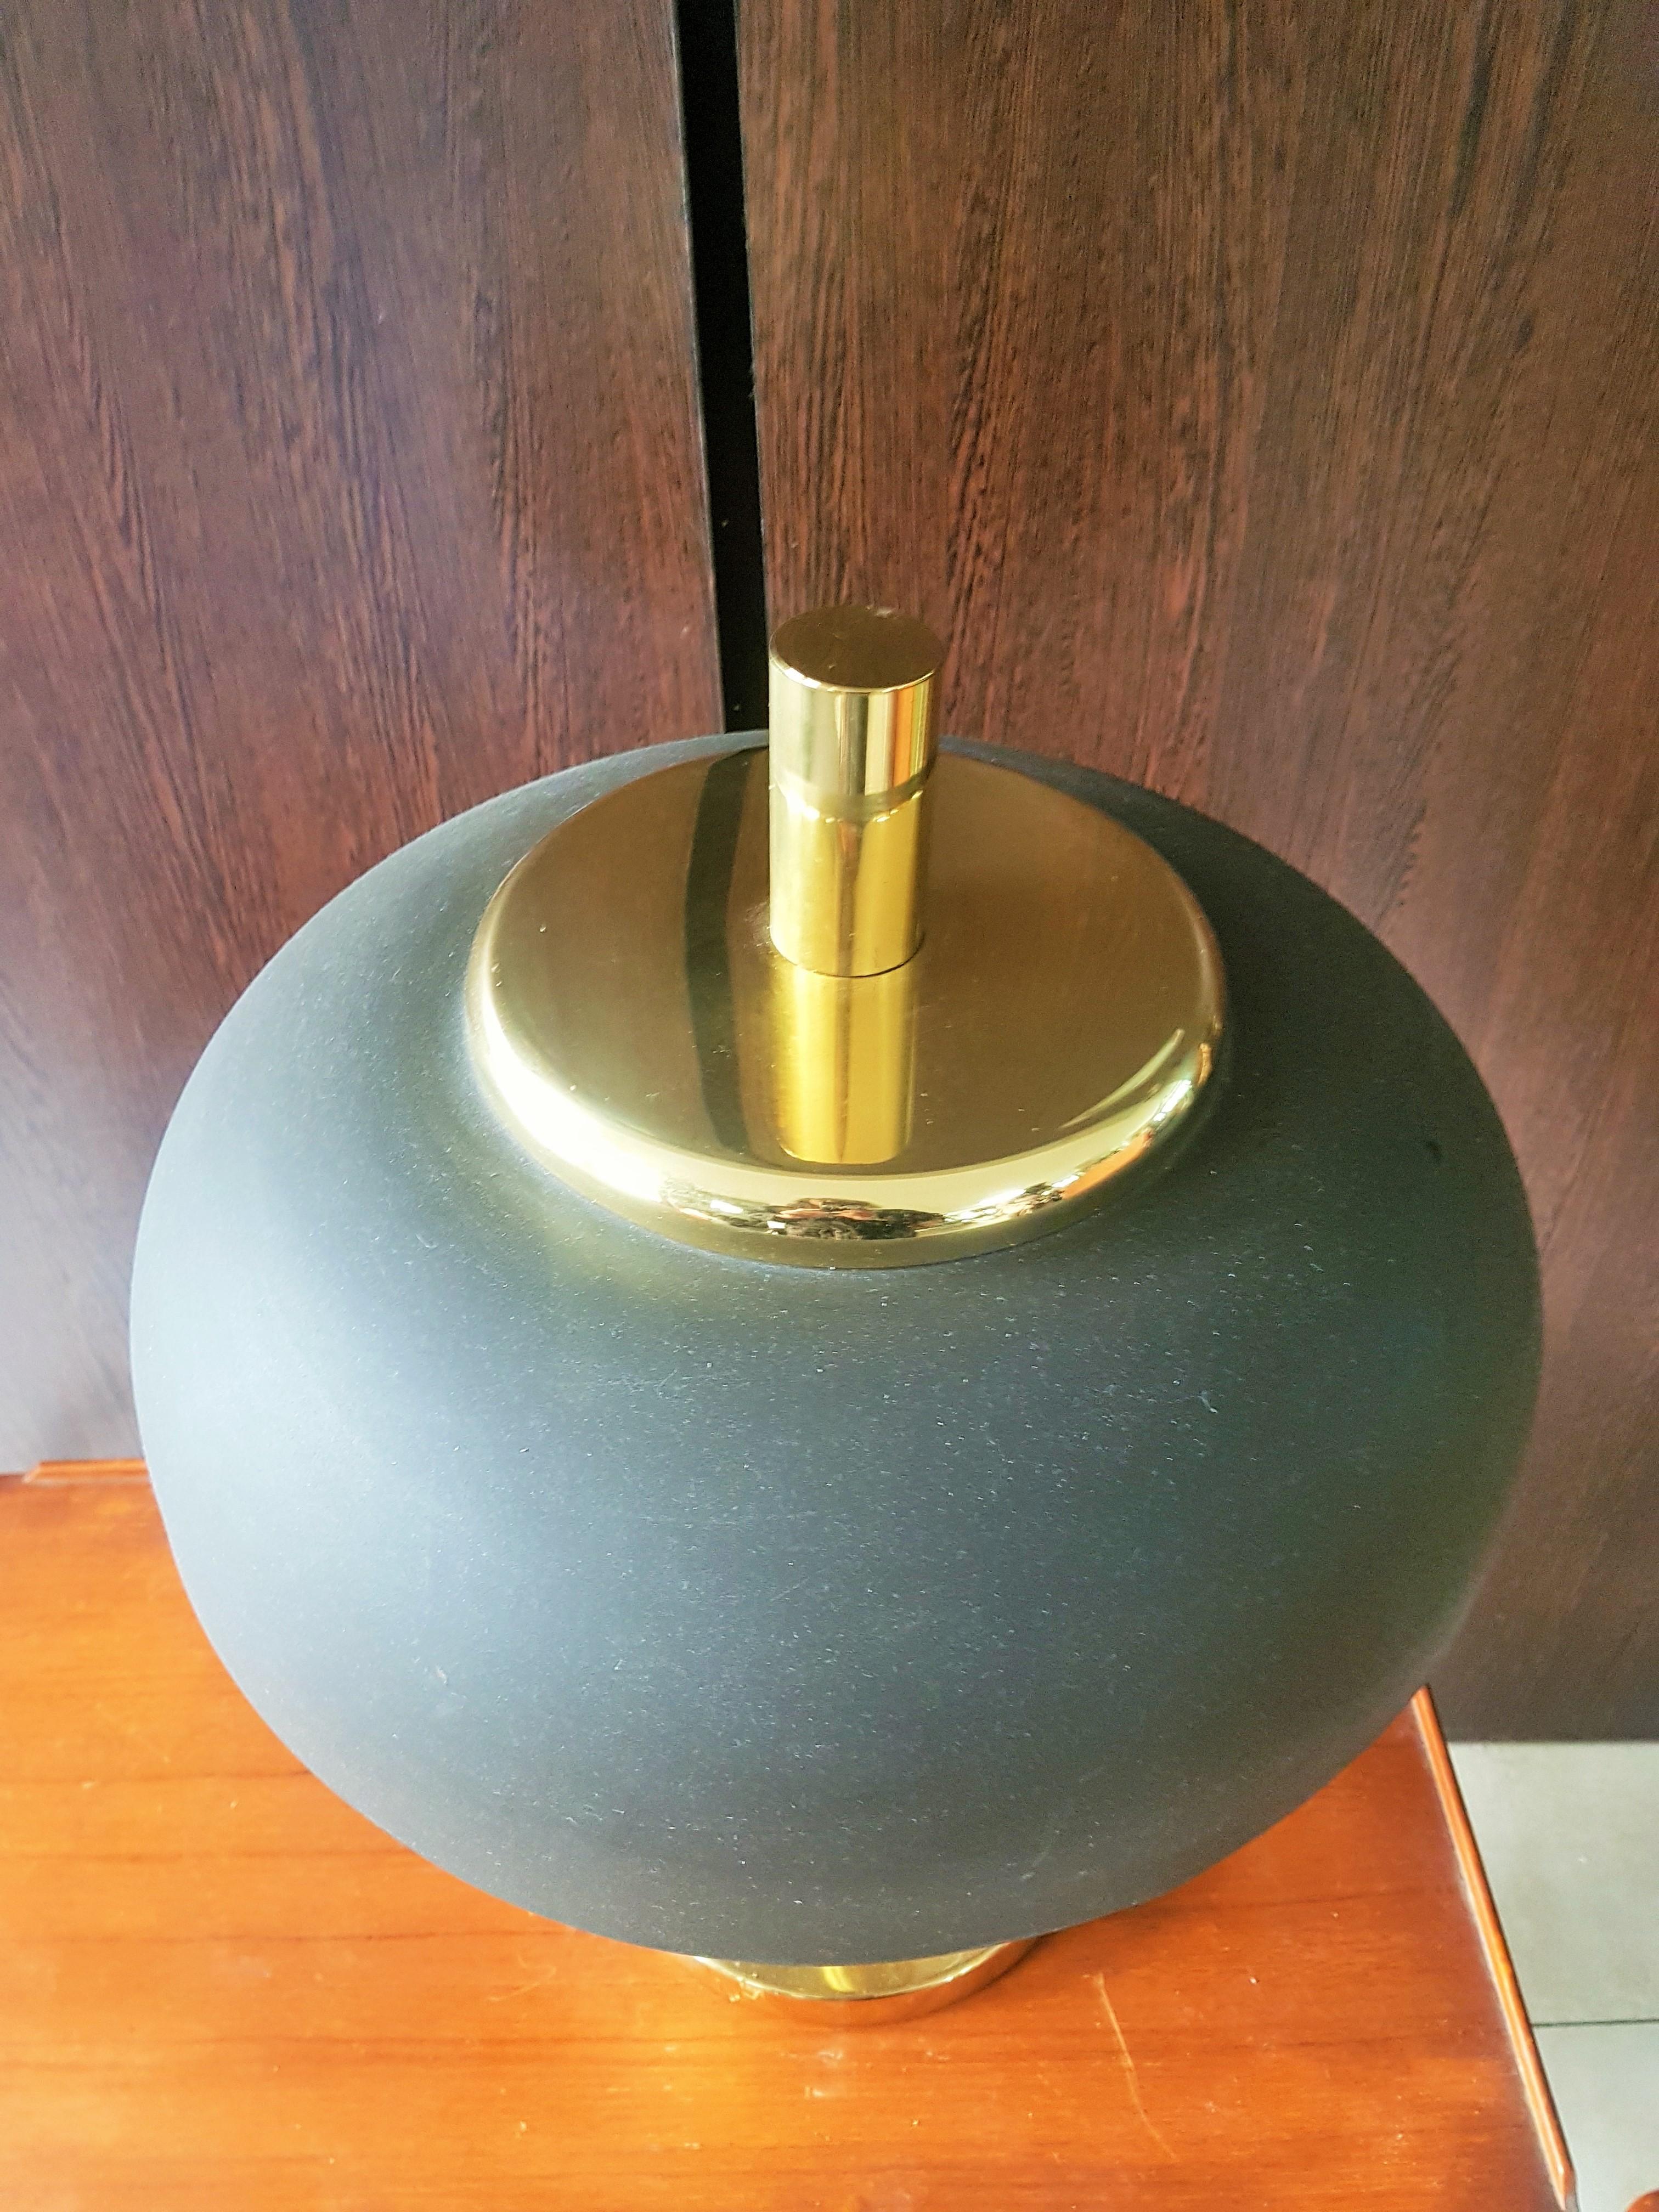 Lampe de table à pied en laiton du milieu du siècle, abat-jour en métal brun, Allemagne, années 1960 b Hillebrand.

Bon état vintage. Deux douilles e27.